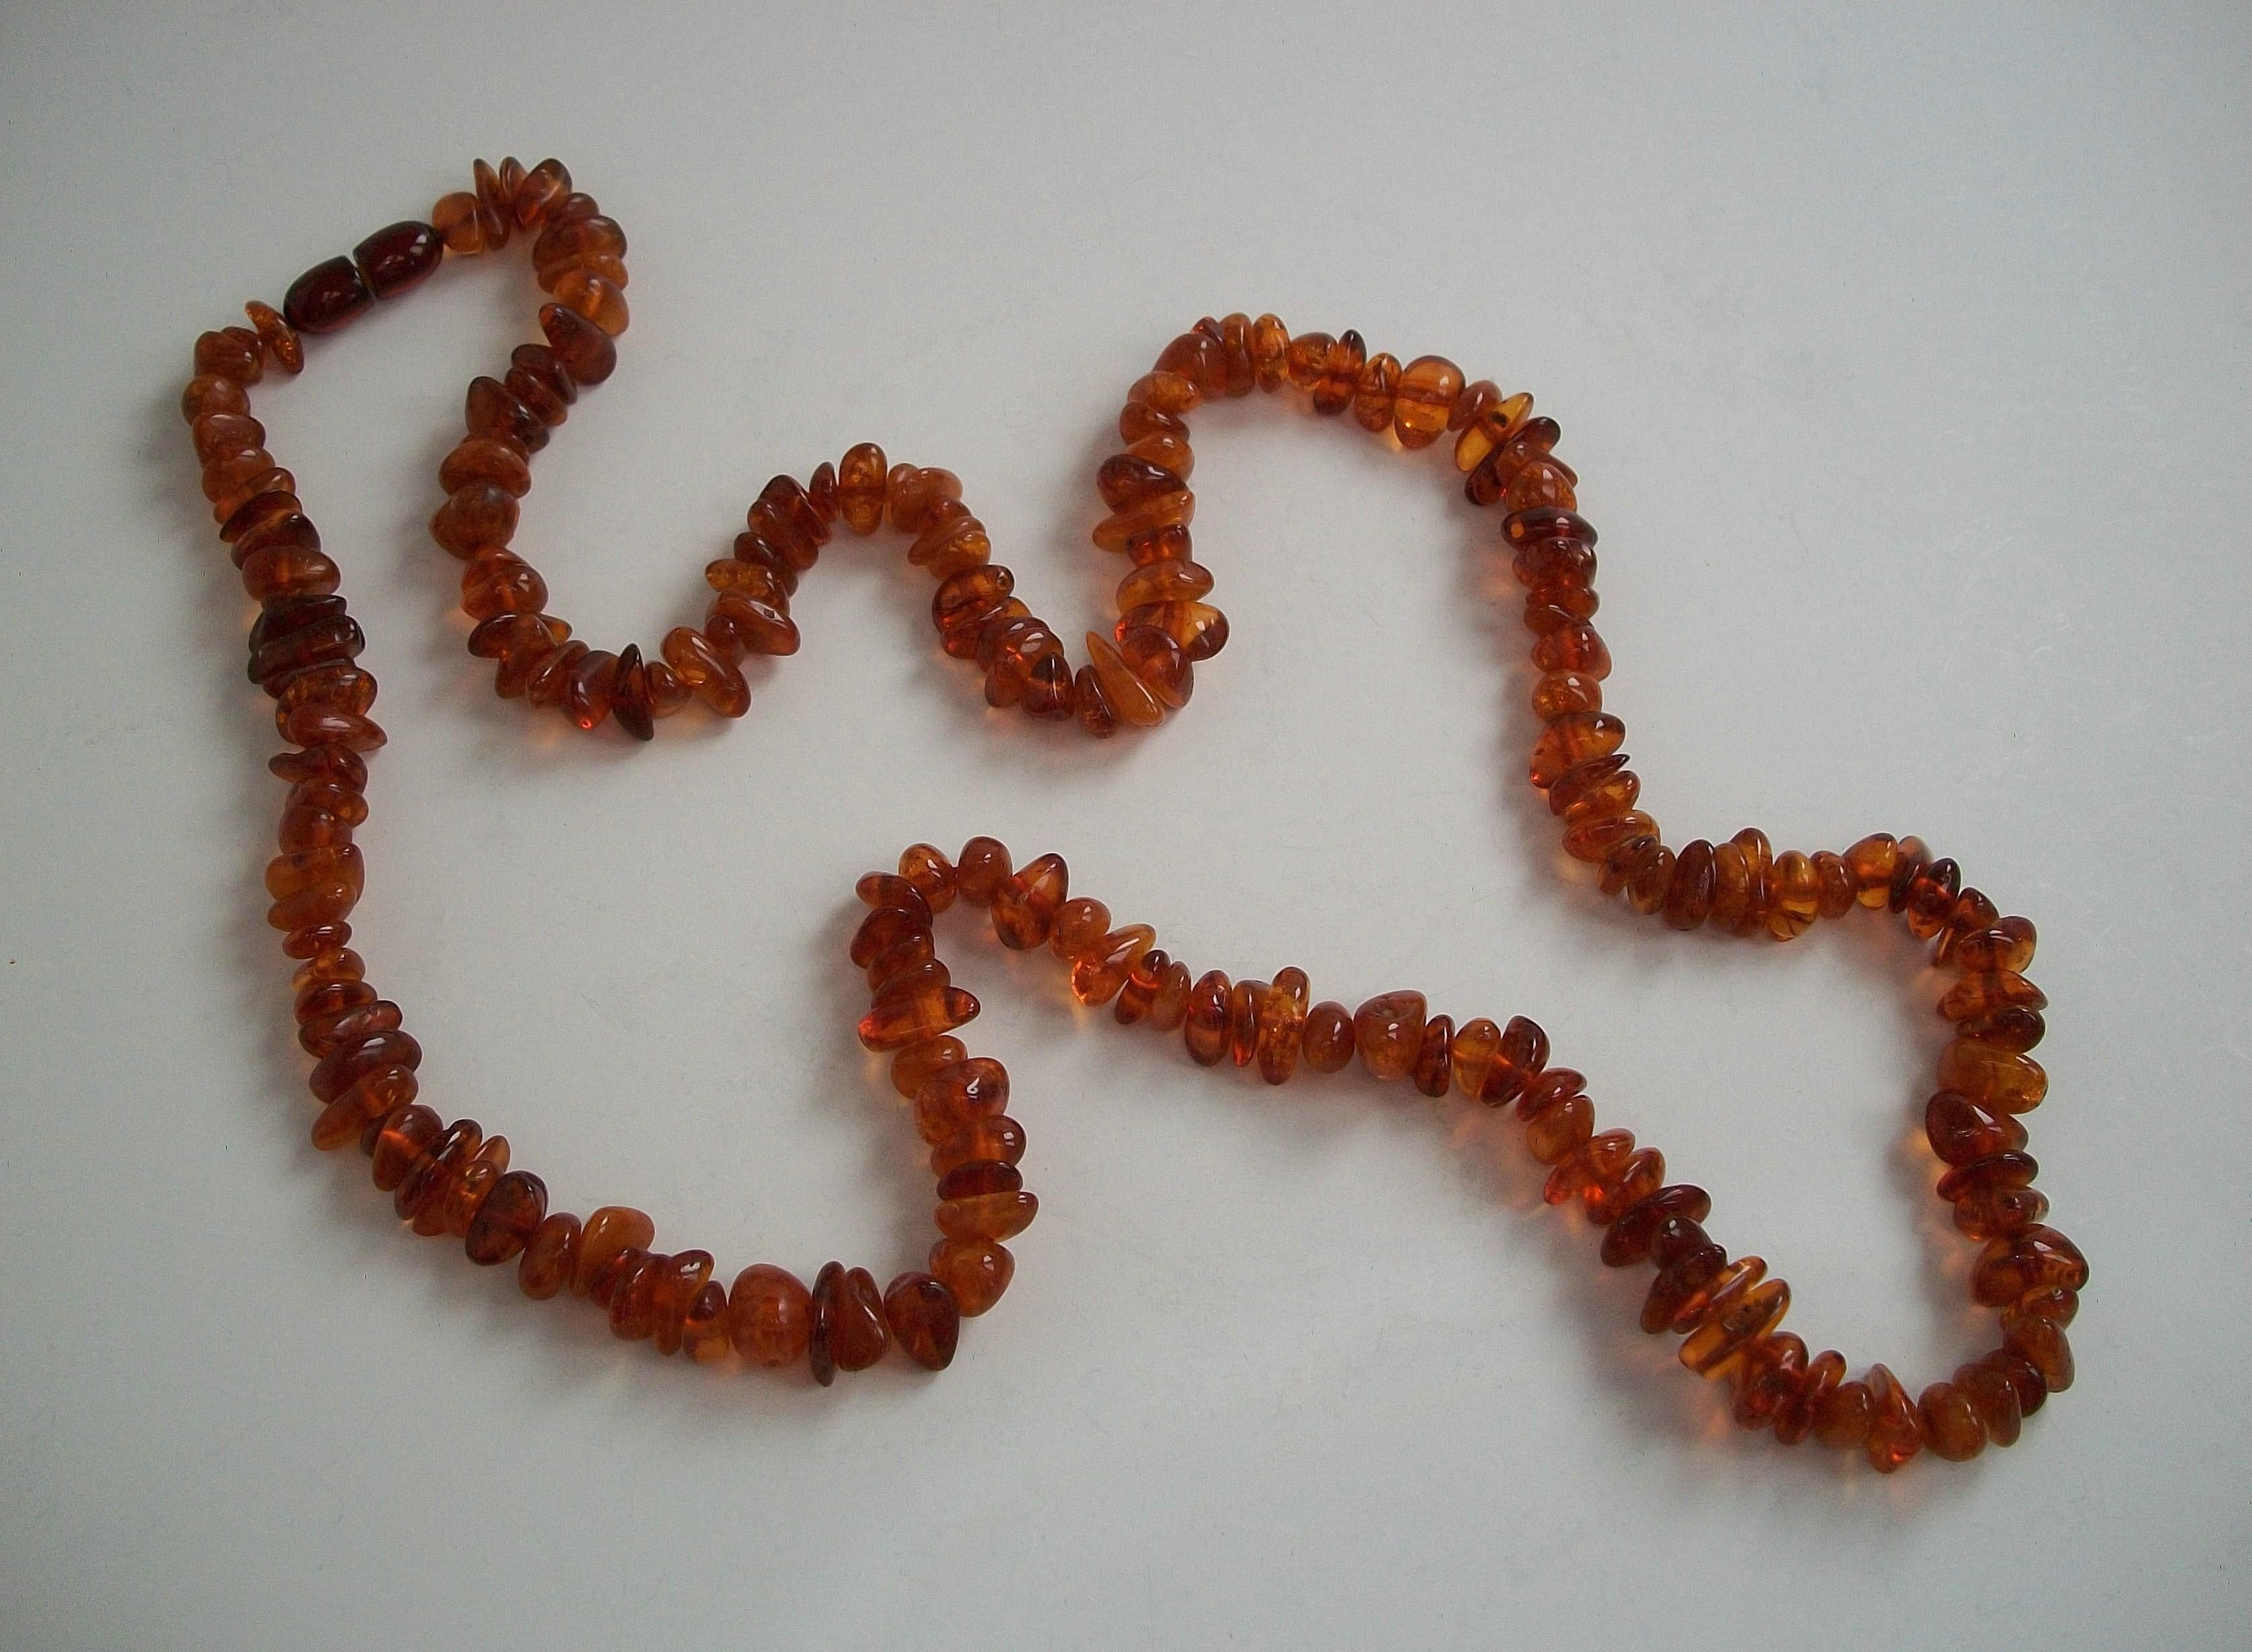 Sautoir vintage en ambre baltique - perles polies (certaines avec des inclusions) - peut être doublé pour être porté en tour de cou - fermoir original en forme de barillet - circa 1930.

Excellent état vintage - tout d'origine - pas de perte - pas